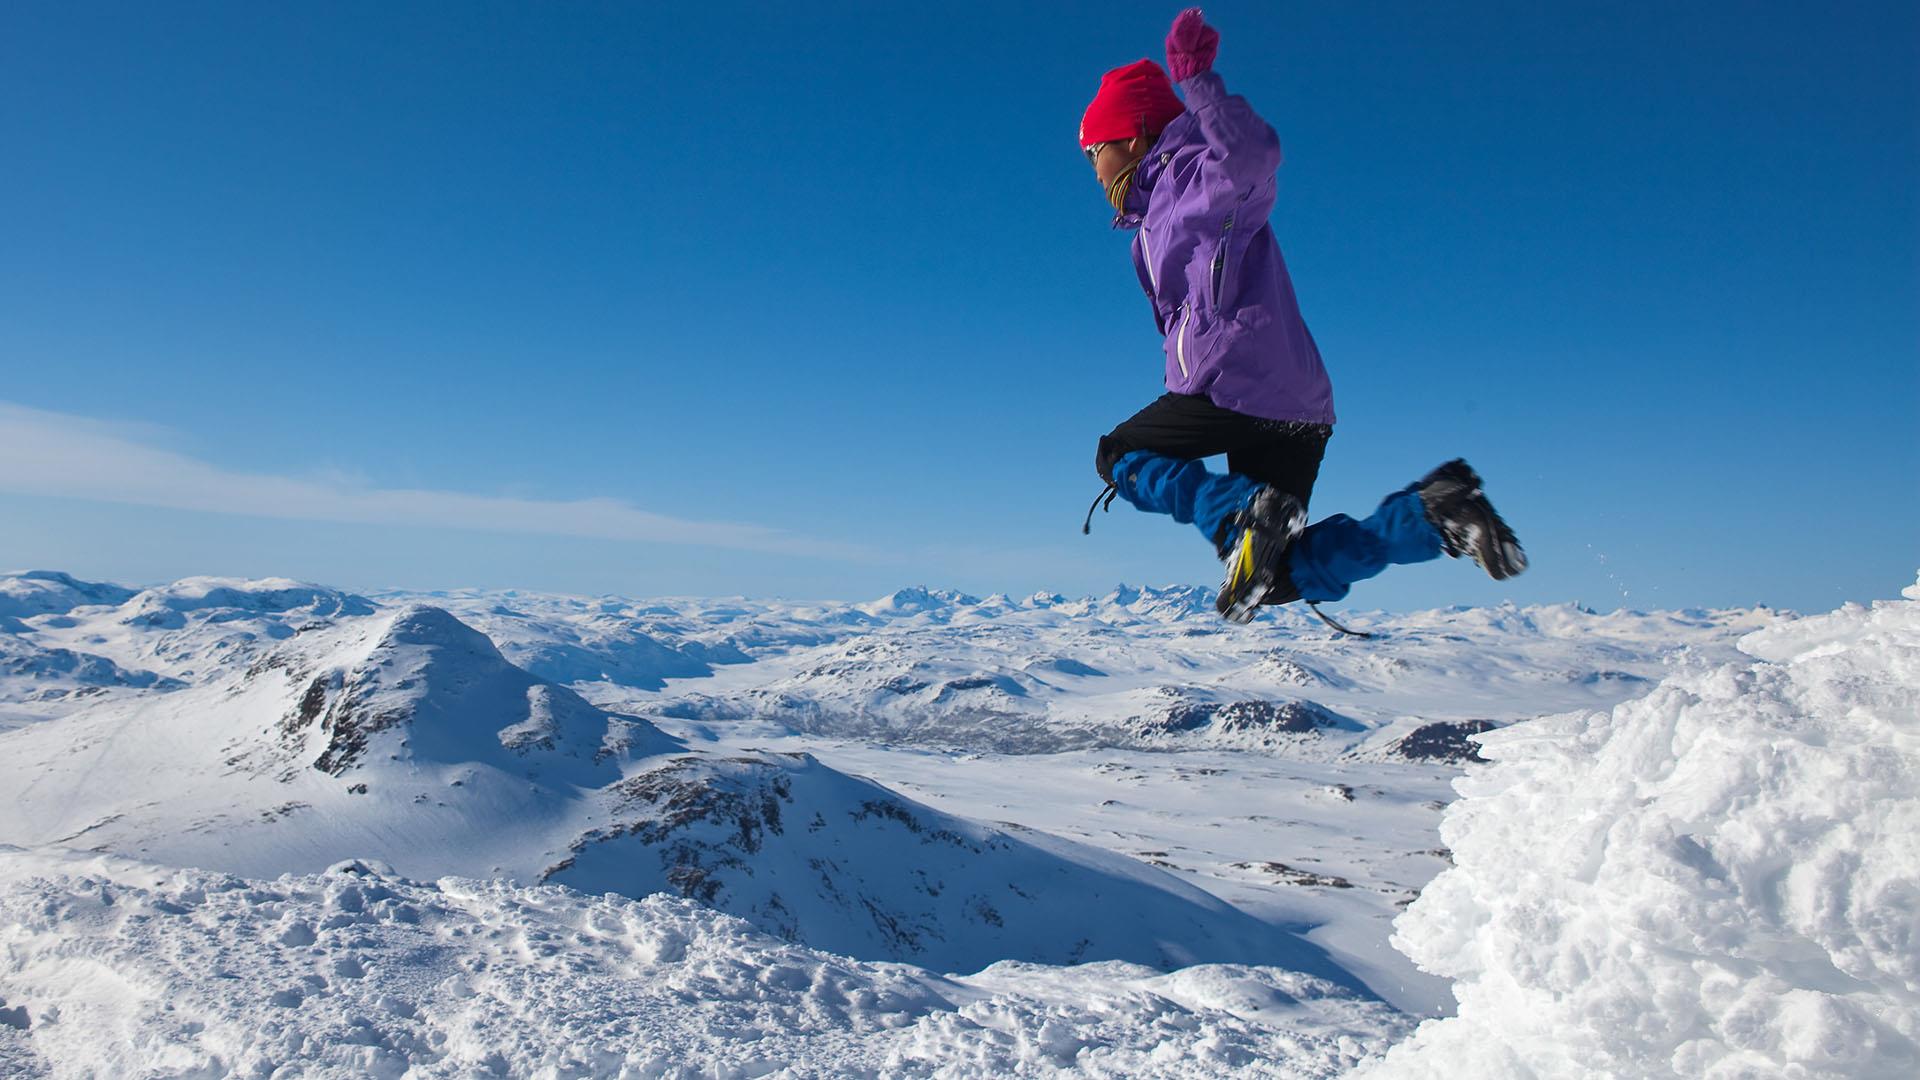 Ein Mädchen in Skikleidung auf einem Berggipfel springt hoch in die Luft. Unter ihren Füßen liegt eine verschneite Berglandschaft so weit das Auge reicht. Blauer Himmmel.